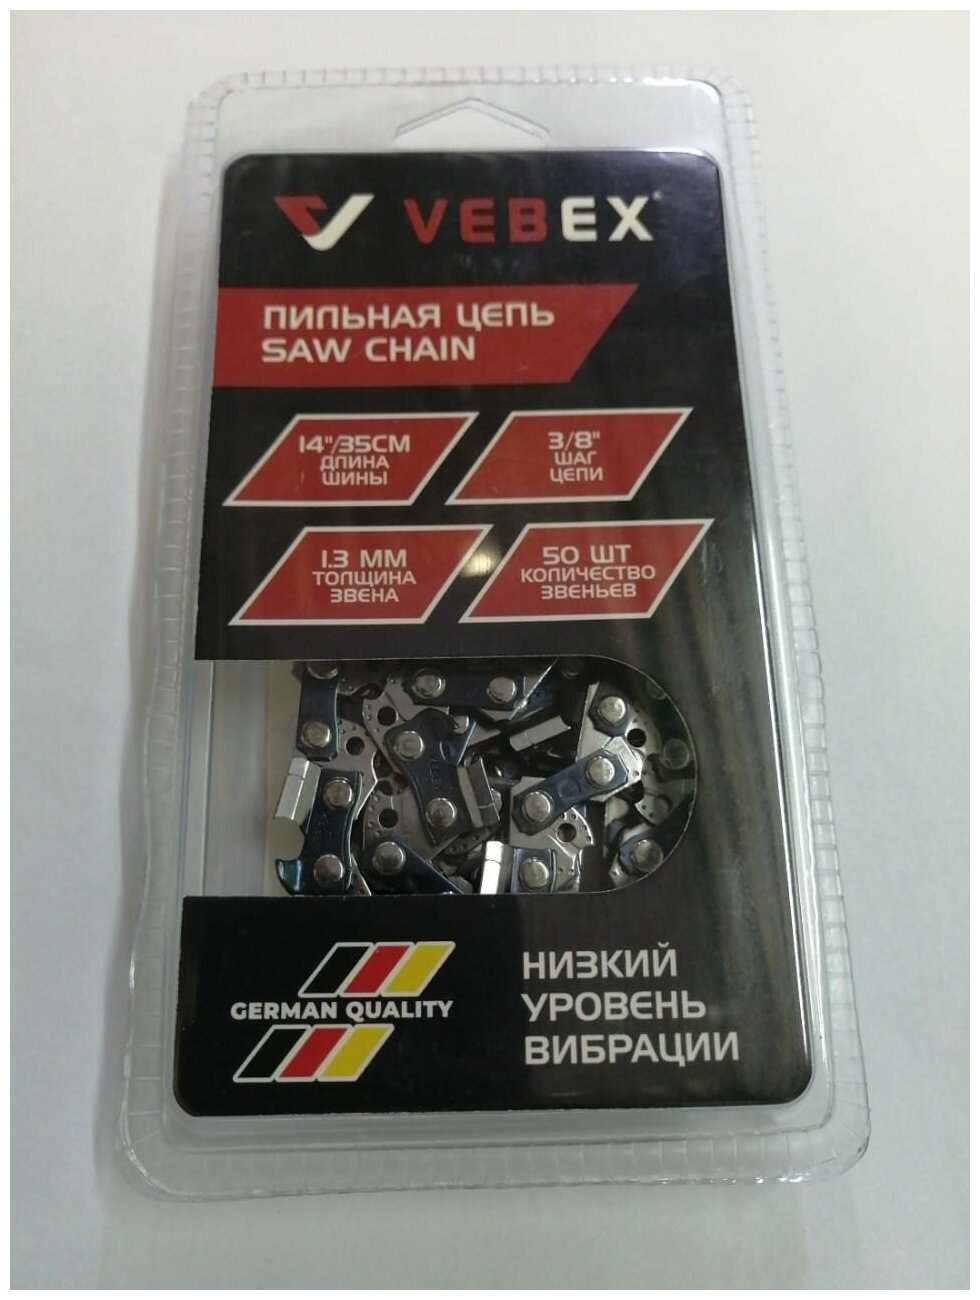 Цепь пильная VEBEX 14"(35см) 3/8" 1.3 мм 50 звеньев